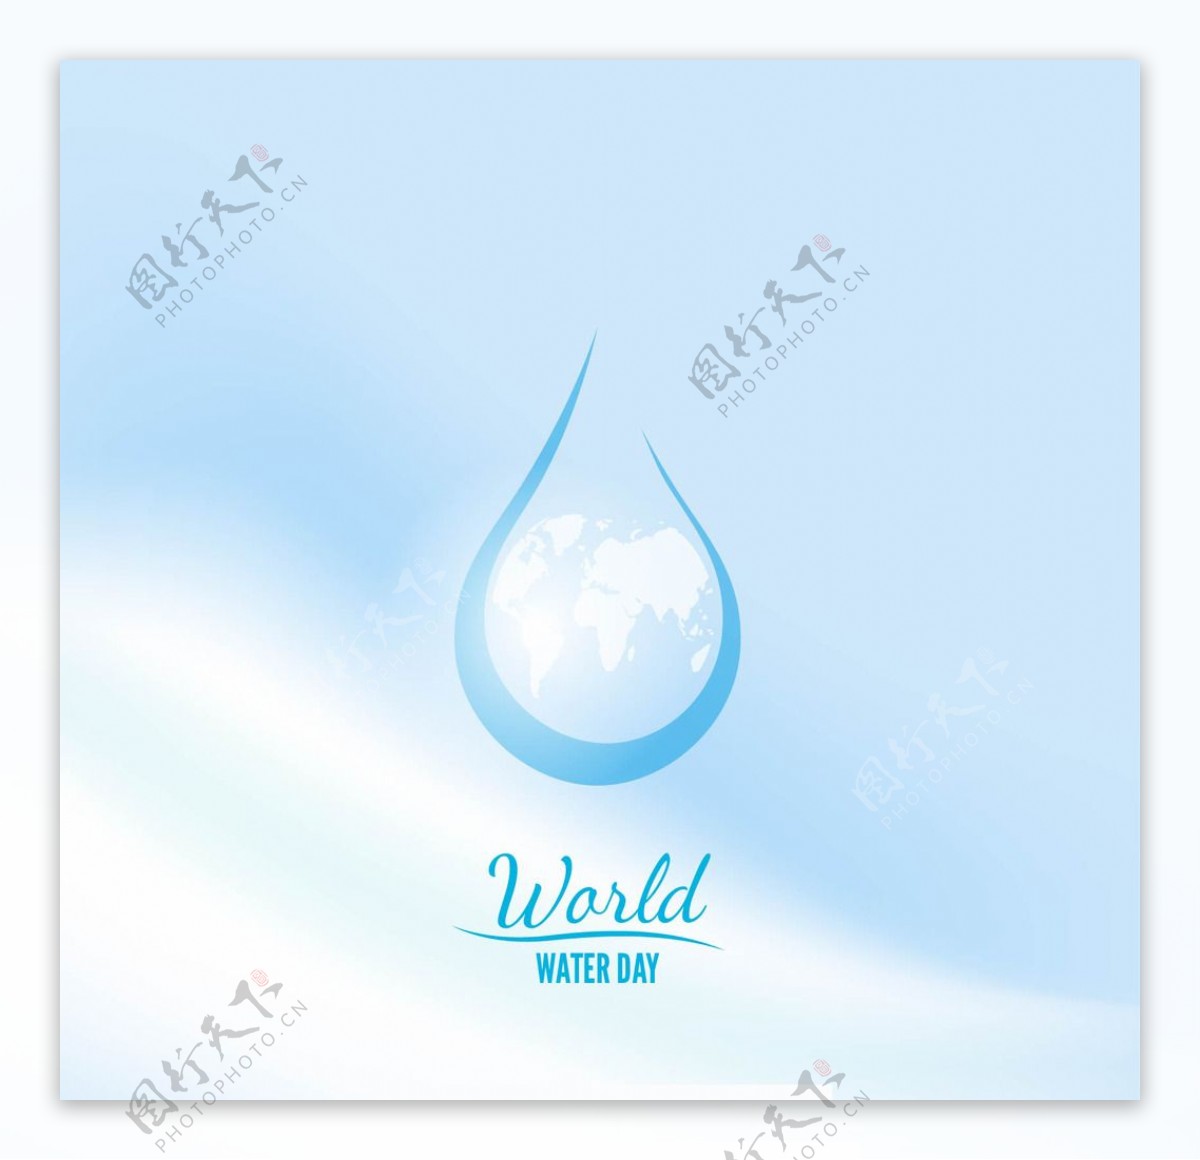 世界水日水滴背景